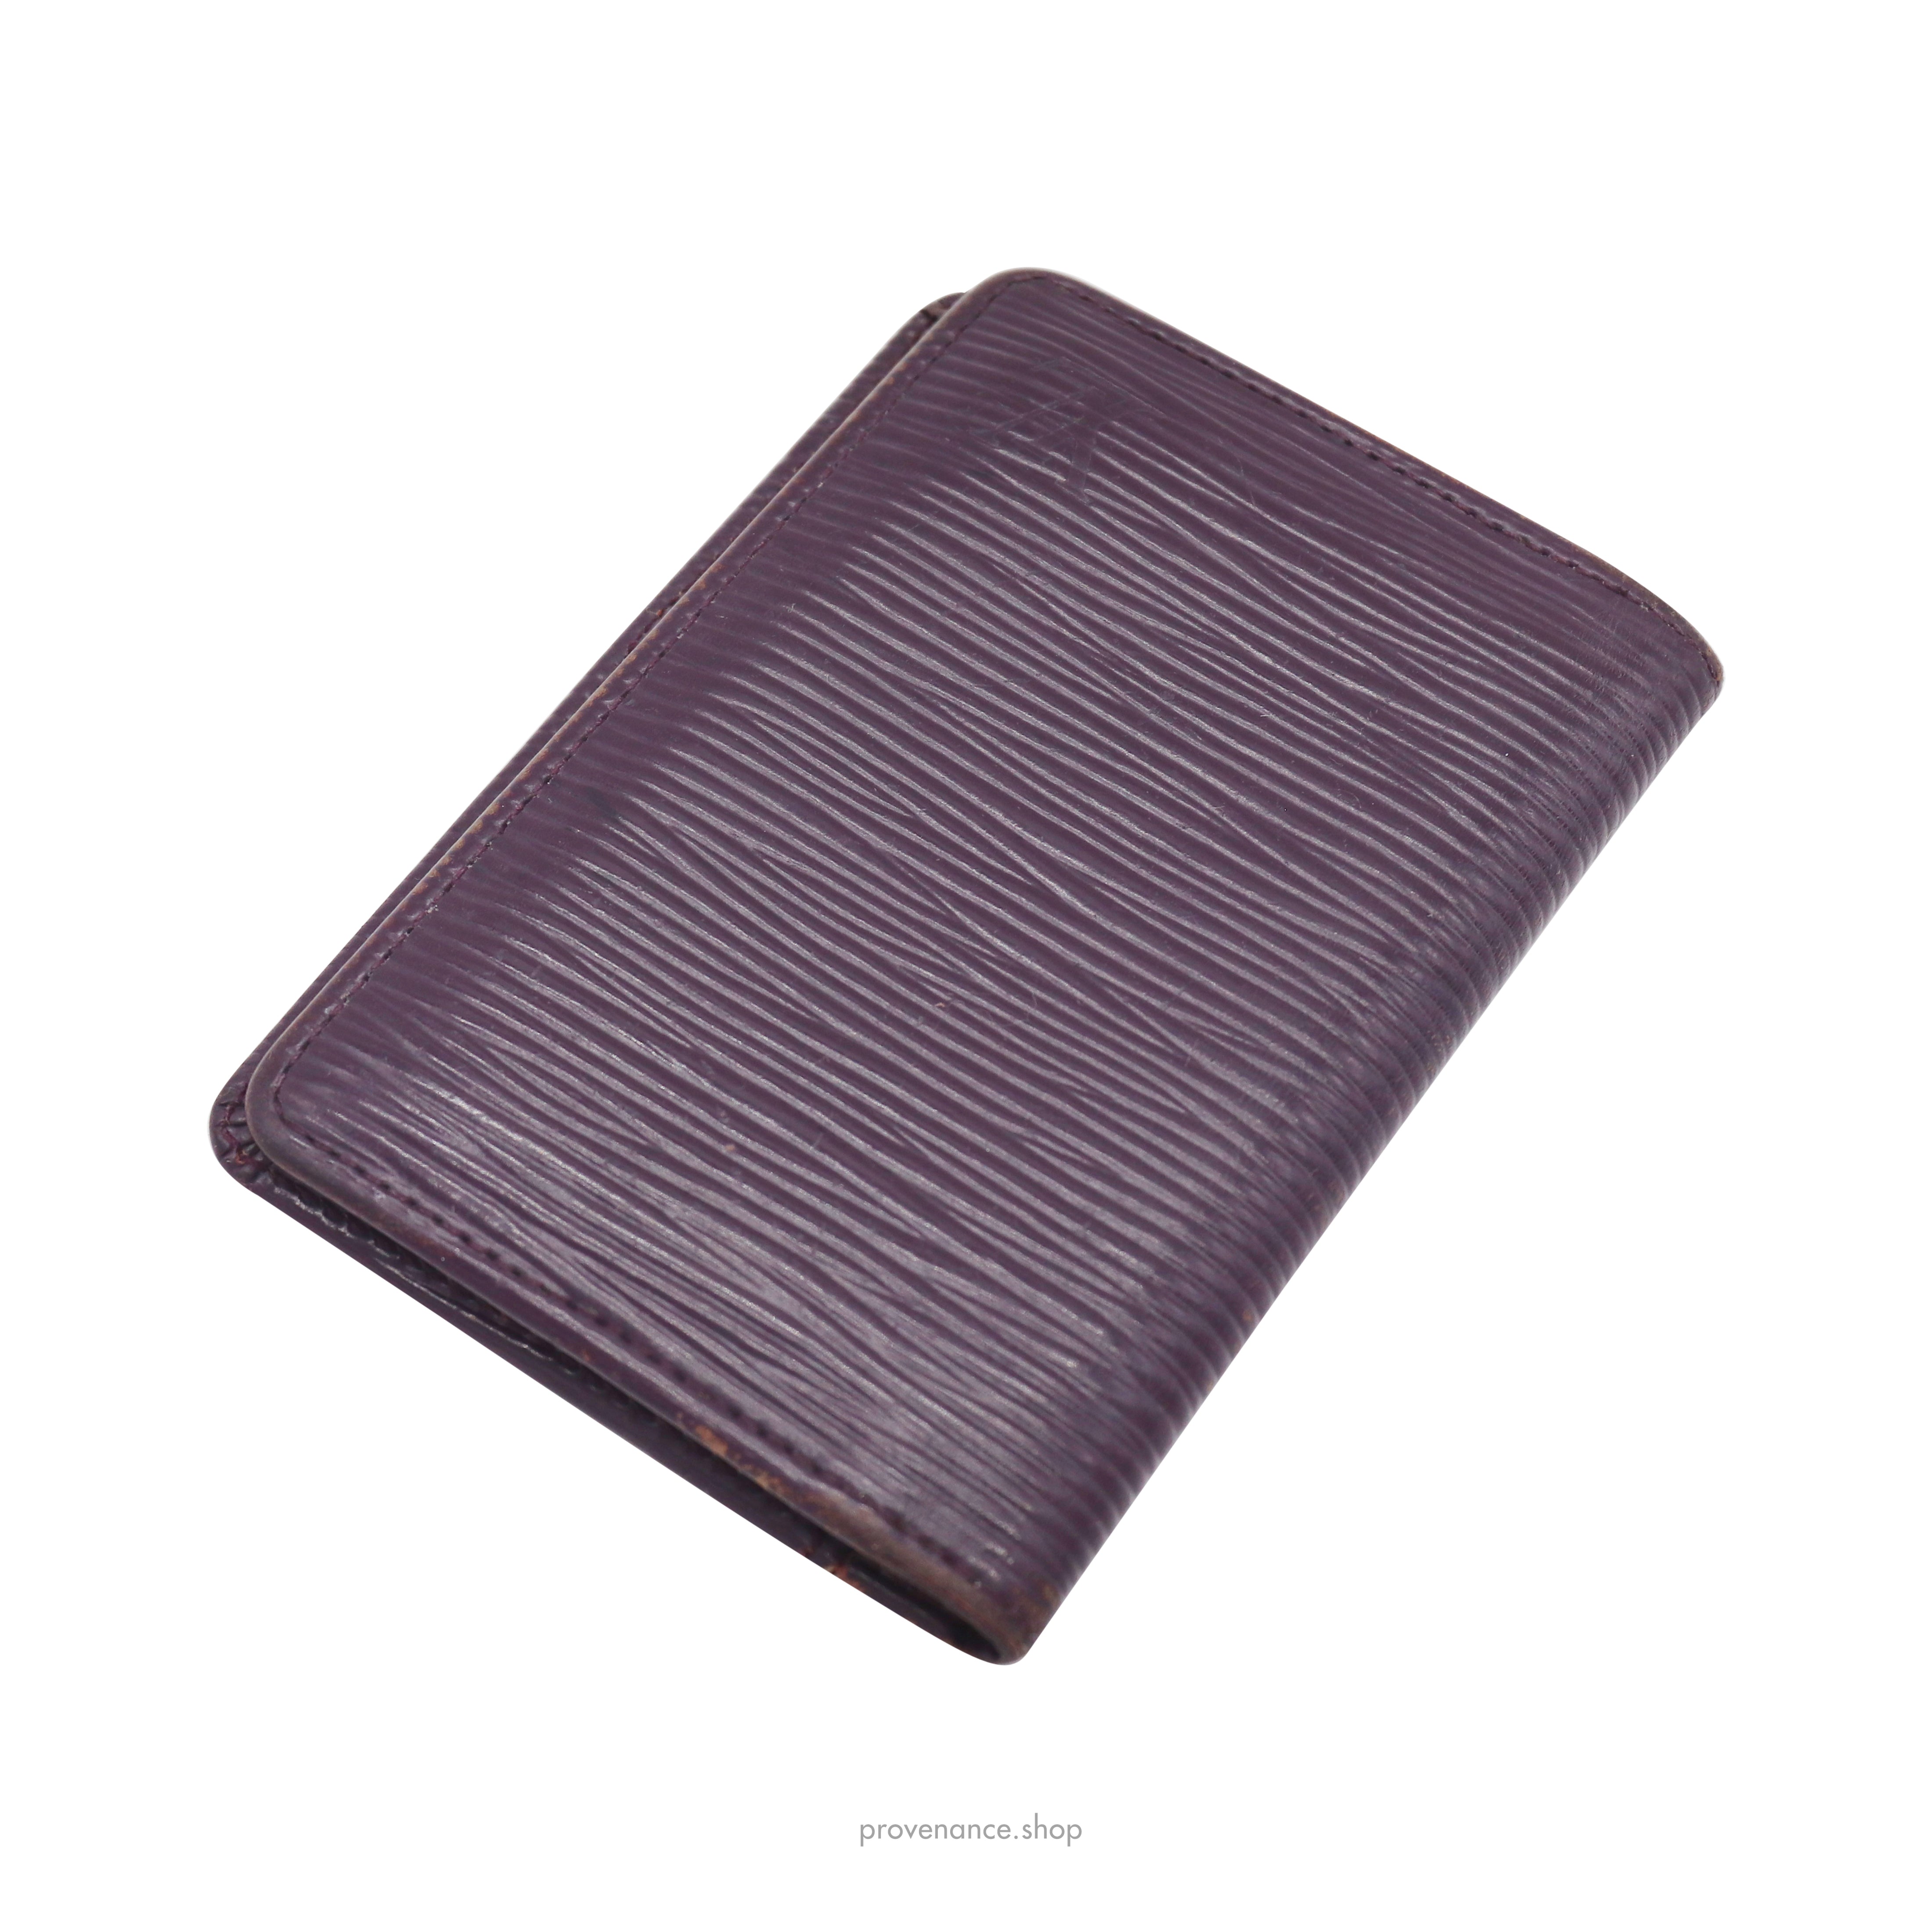 Louis Vuitton - Sarah Epi Leather Wallet Cassis